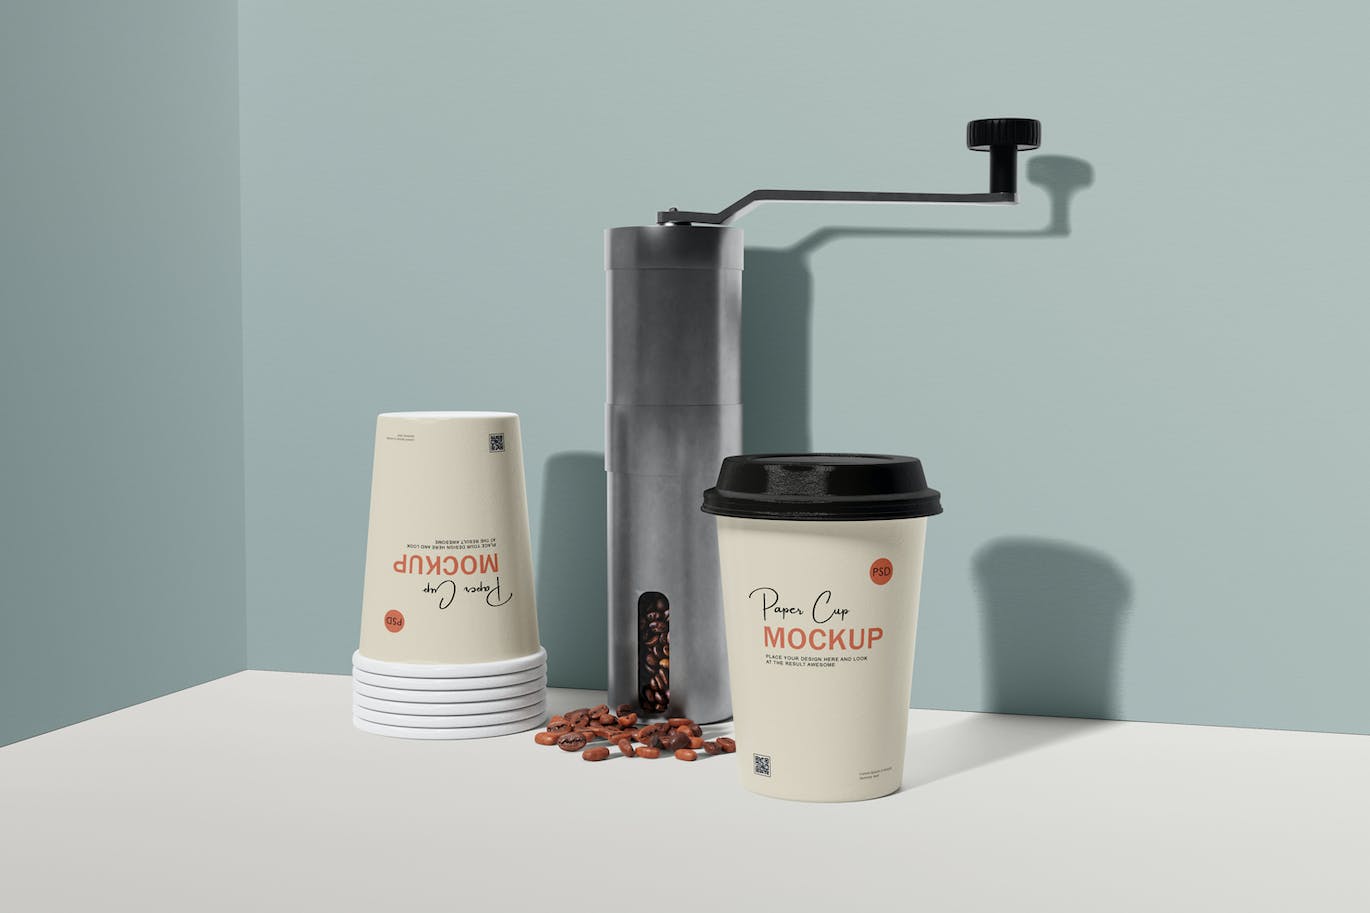 咖啡机咖啡杯包装设计样机 Coffee cup mockup with coffee machine 样机素材 第9张